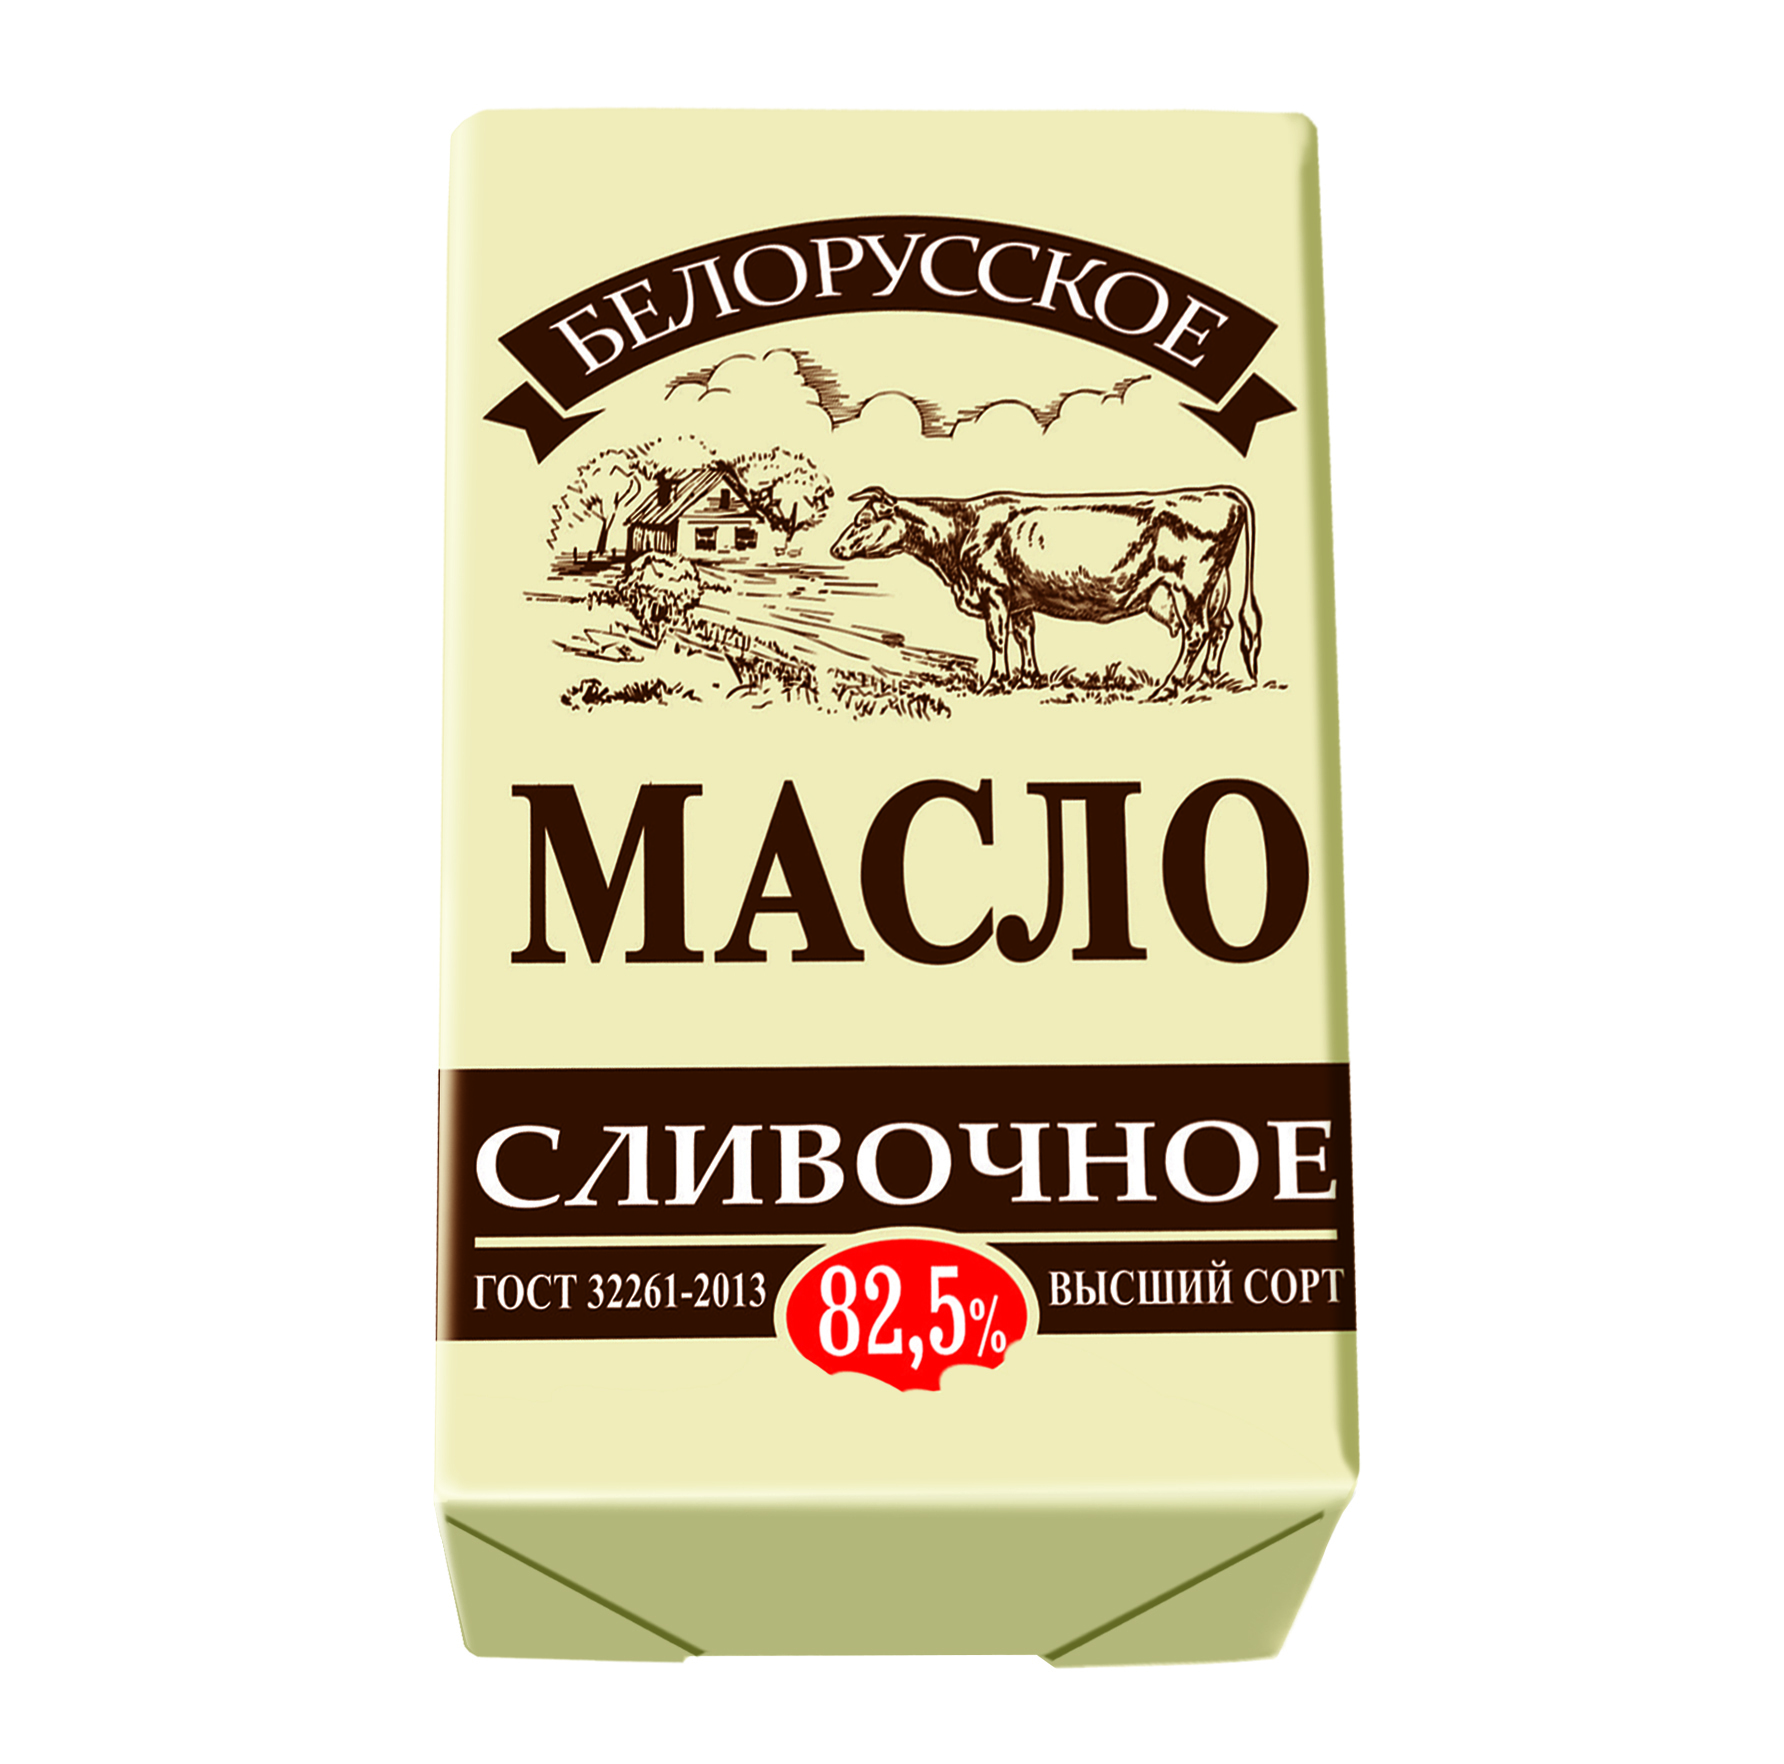 Масло сливочное. Масло сливочное белорусское. Белорусское видно масло сливочное. Масло Слуцкое 82.5 сливочное белорусское.